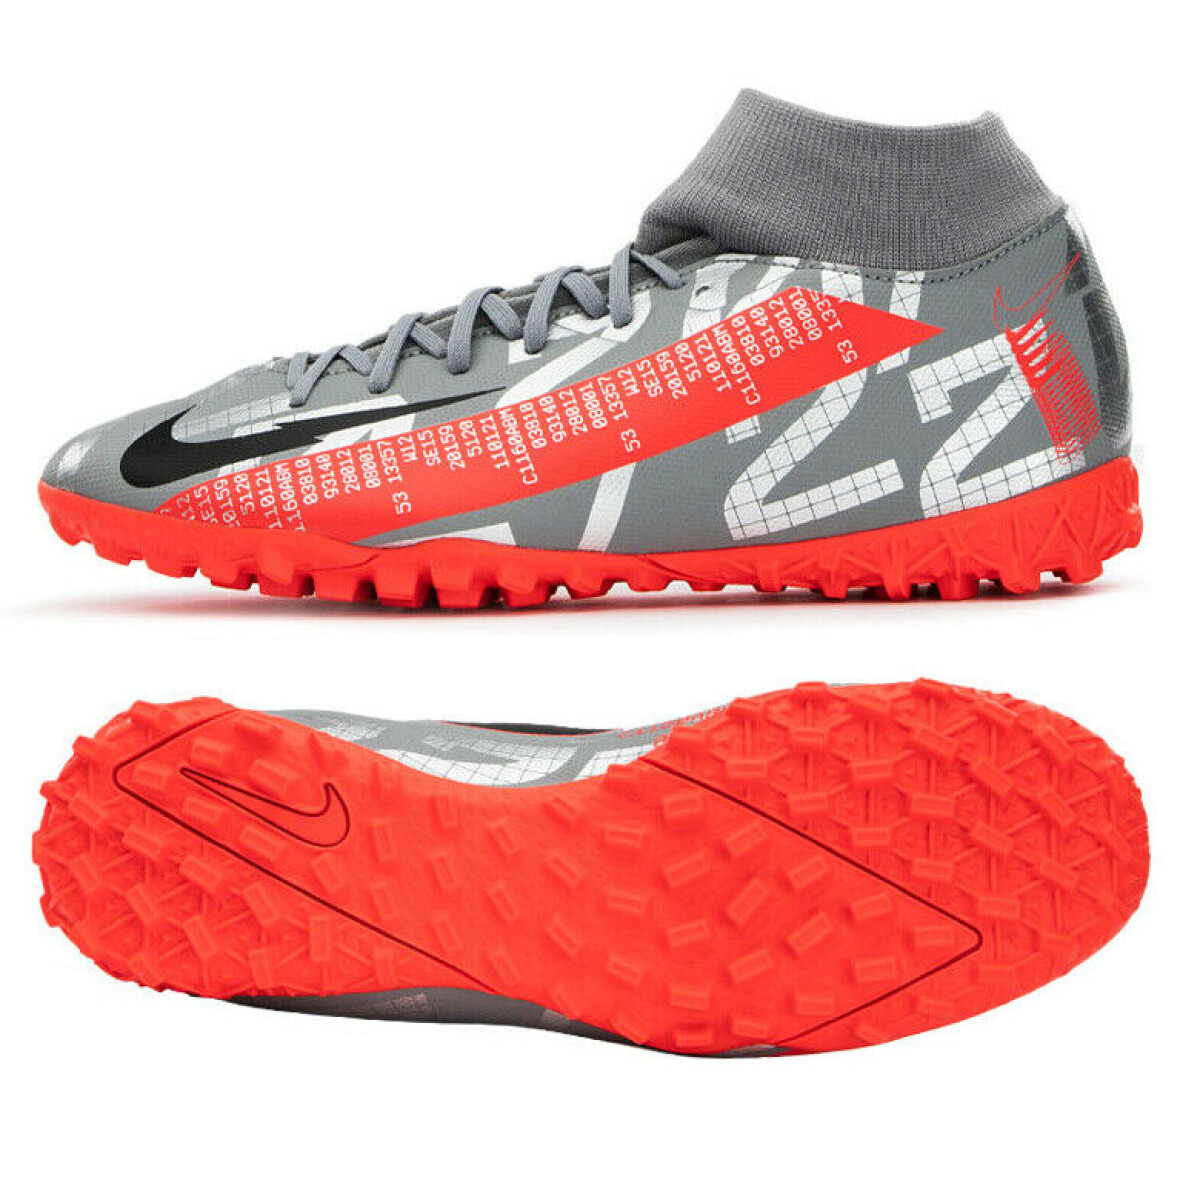 Zapato Nike Futbol 5 Hombre Superfly 7 academy Gris Metalico/ rojo - Color Único 